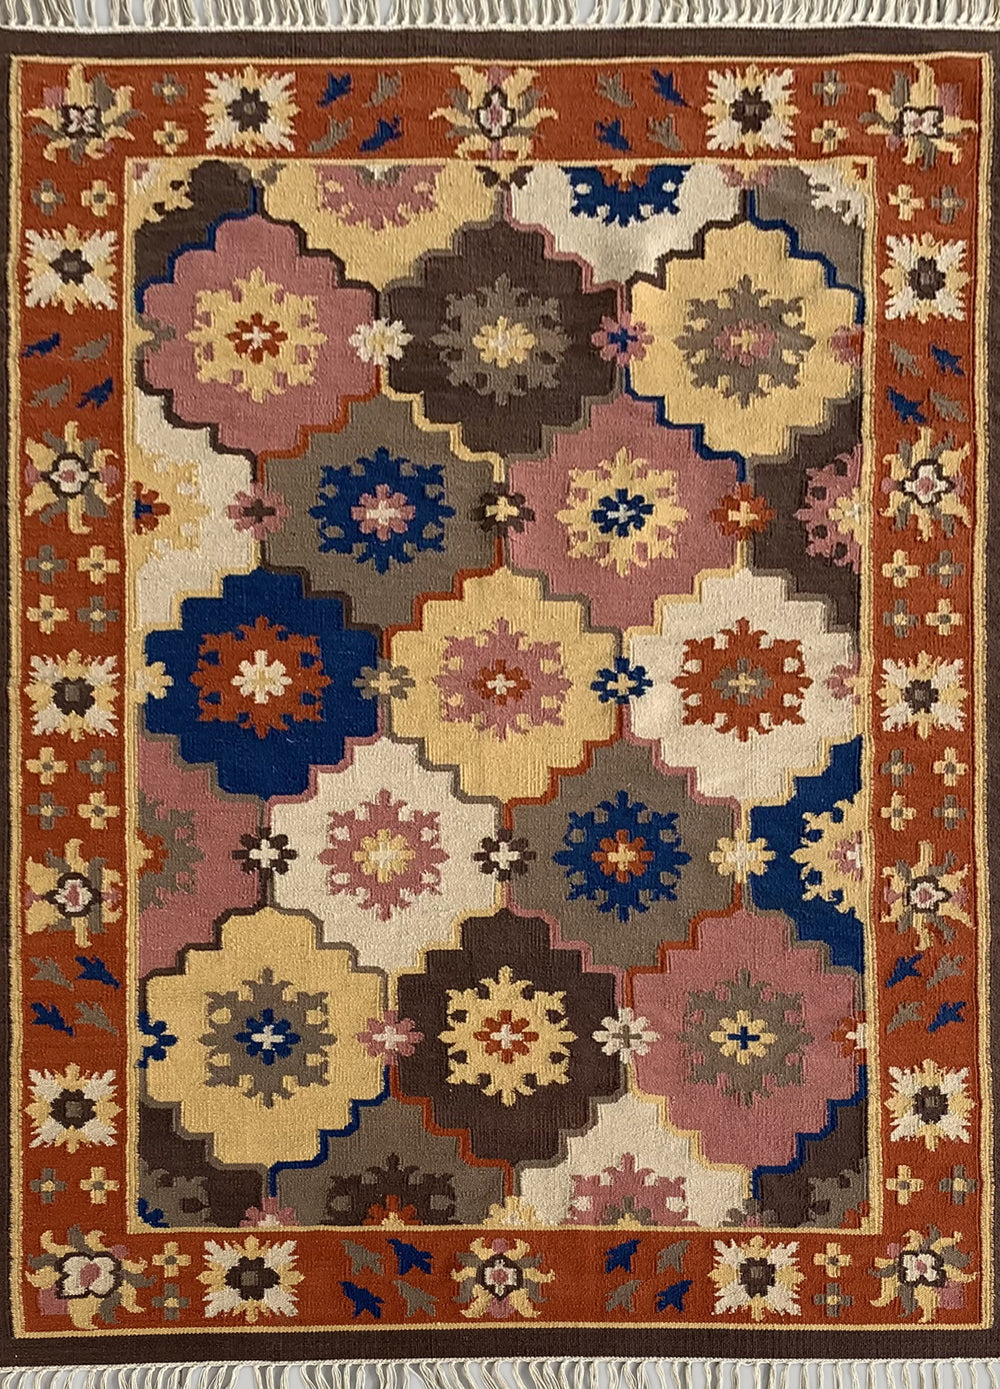 For Home Multicolor Handmade Kilim Carpet Dari Rugs at Rs 900